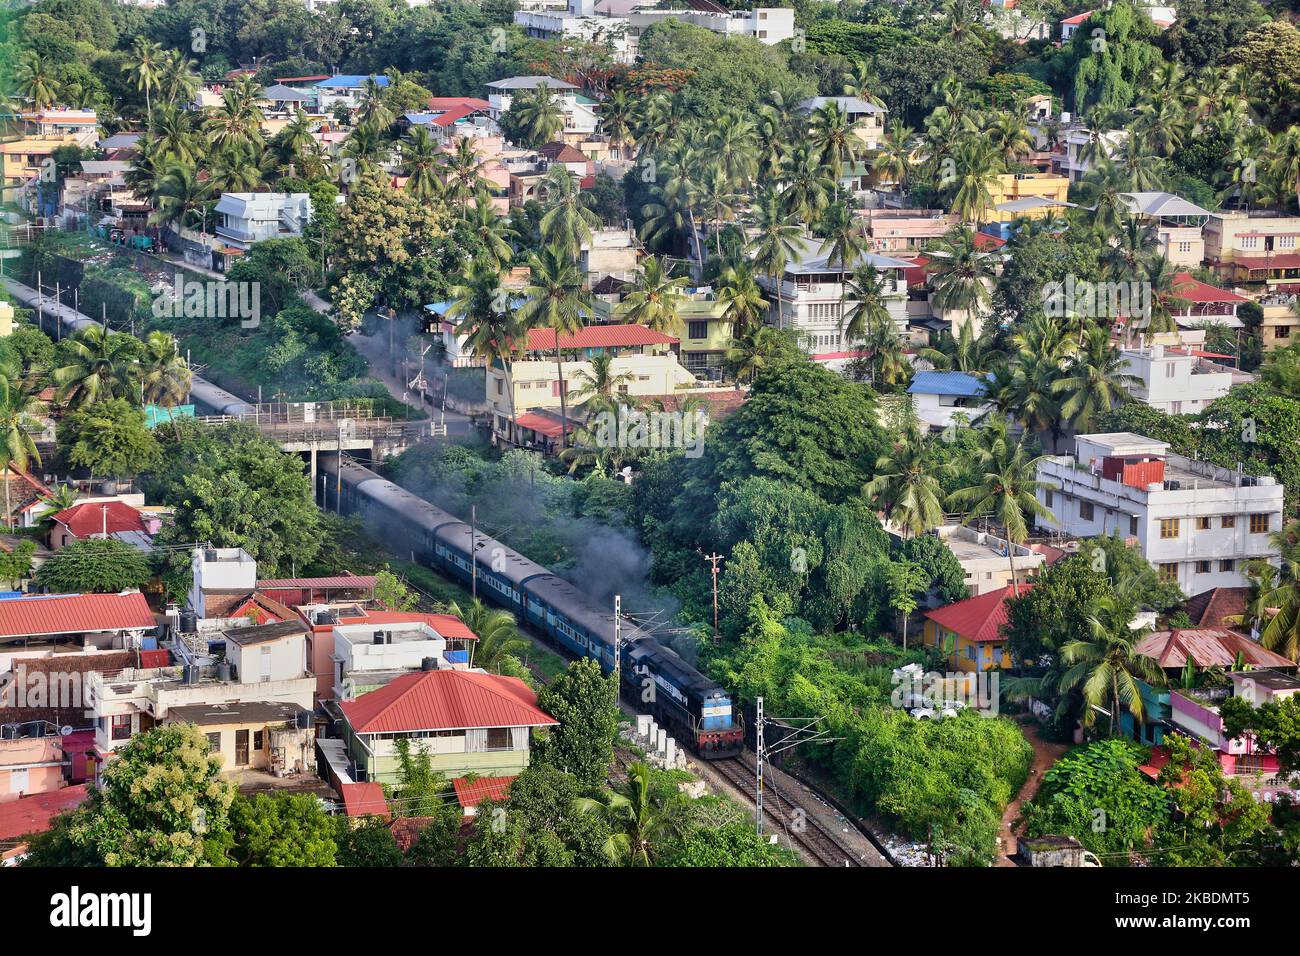 Am 5. Juli 2019 fährt ein kohlebetriebener Personenzug durch die Stadt Thiruvananthapuram (Trivandrum), Kerala, Indien. (Foto von Creative Touch Imaging Ltd./NurPhoto) Stockfoto